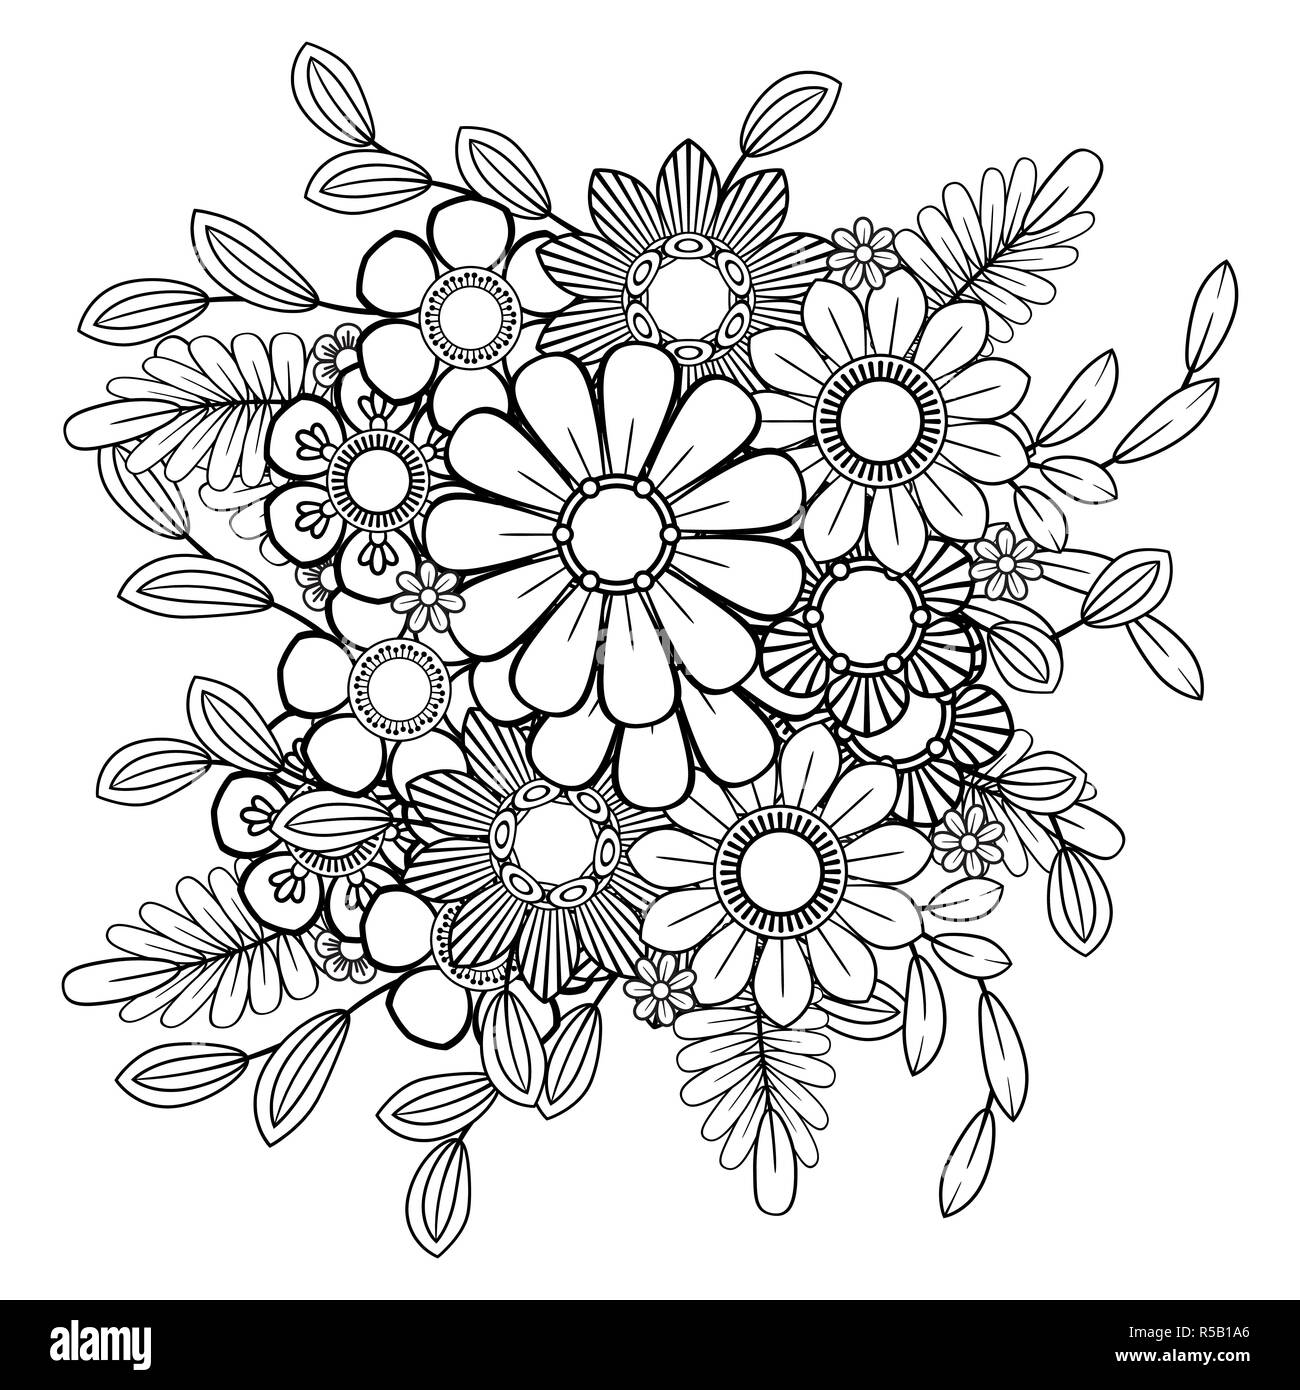 Nach Färbung mit Blumen Muster. Schwarze und weiße doodle Kranz. Florale Mandala. Blumenstrauß line Art Vector Illustration auf weißem Hintergrund. Rundes Design Element Stock Vektor